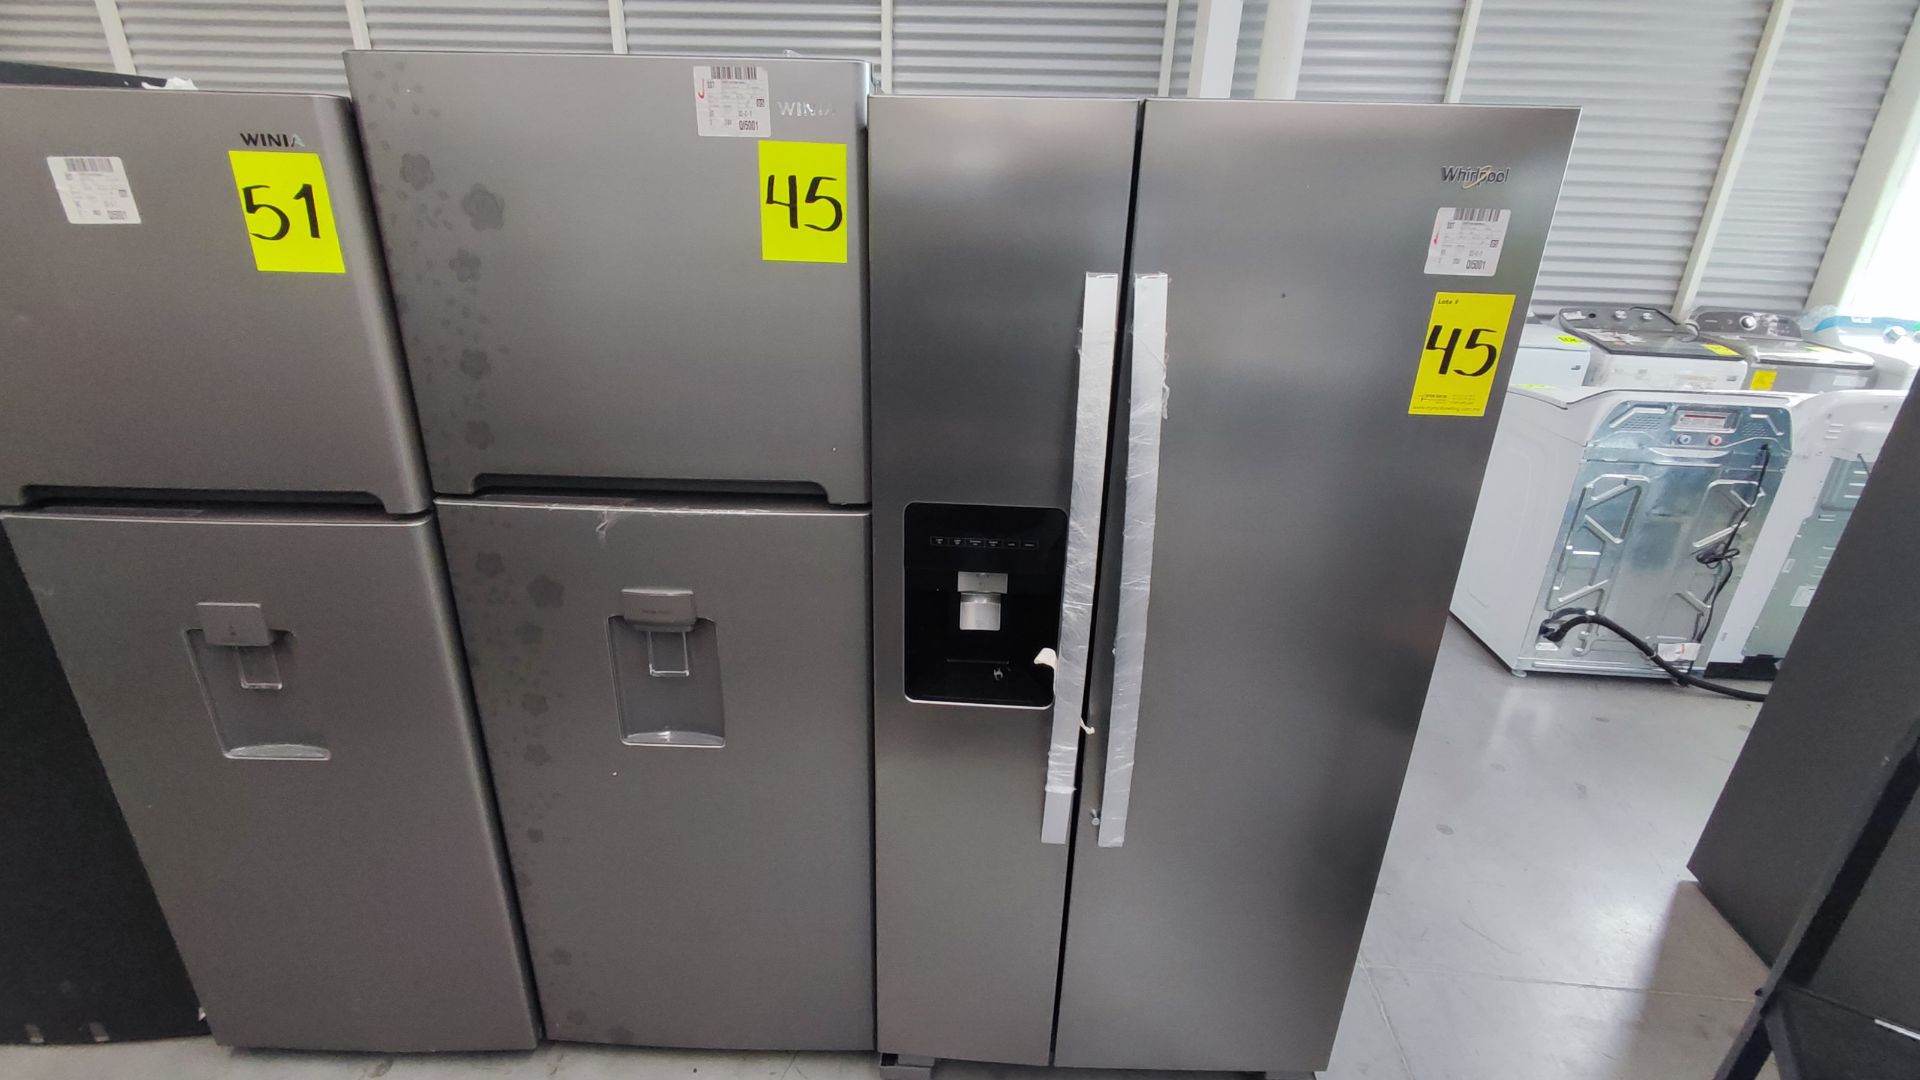 Lote Conformado por 2 Refrigeradores, Contiene; 1 Refrigerador con Dispensador de Agua Marca Whirlp - Image 3 of 13